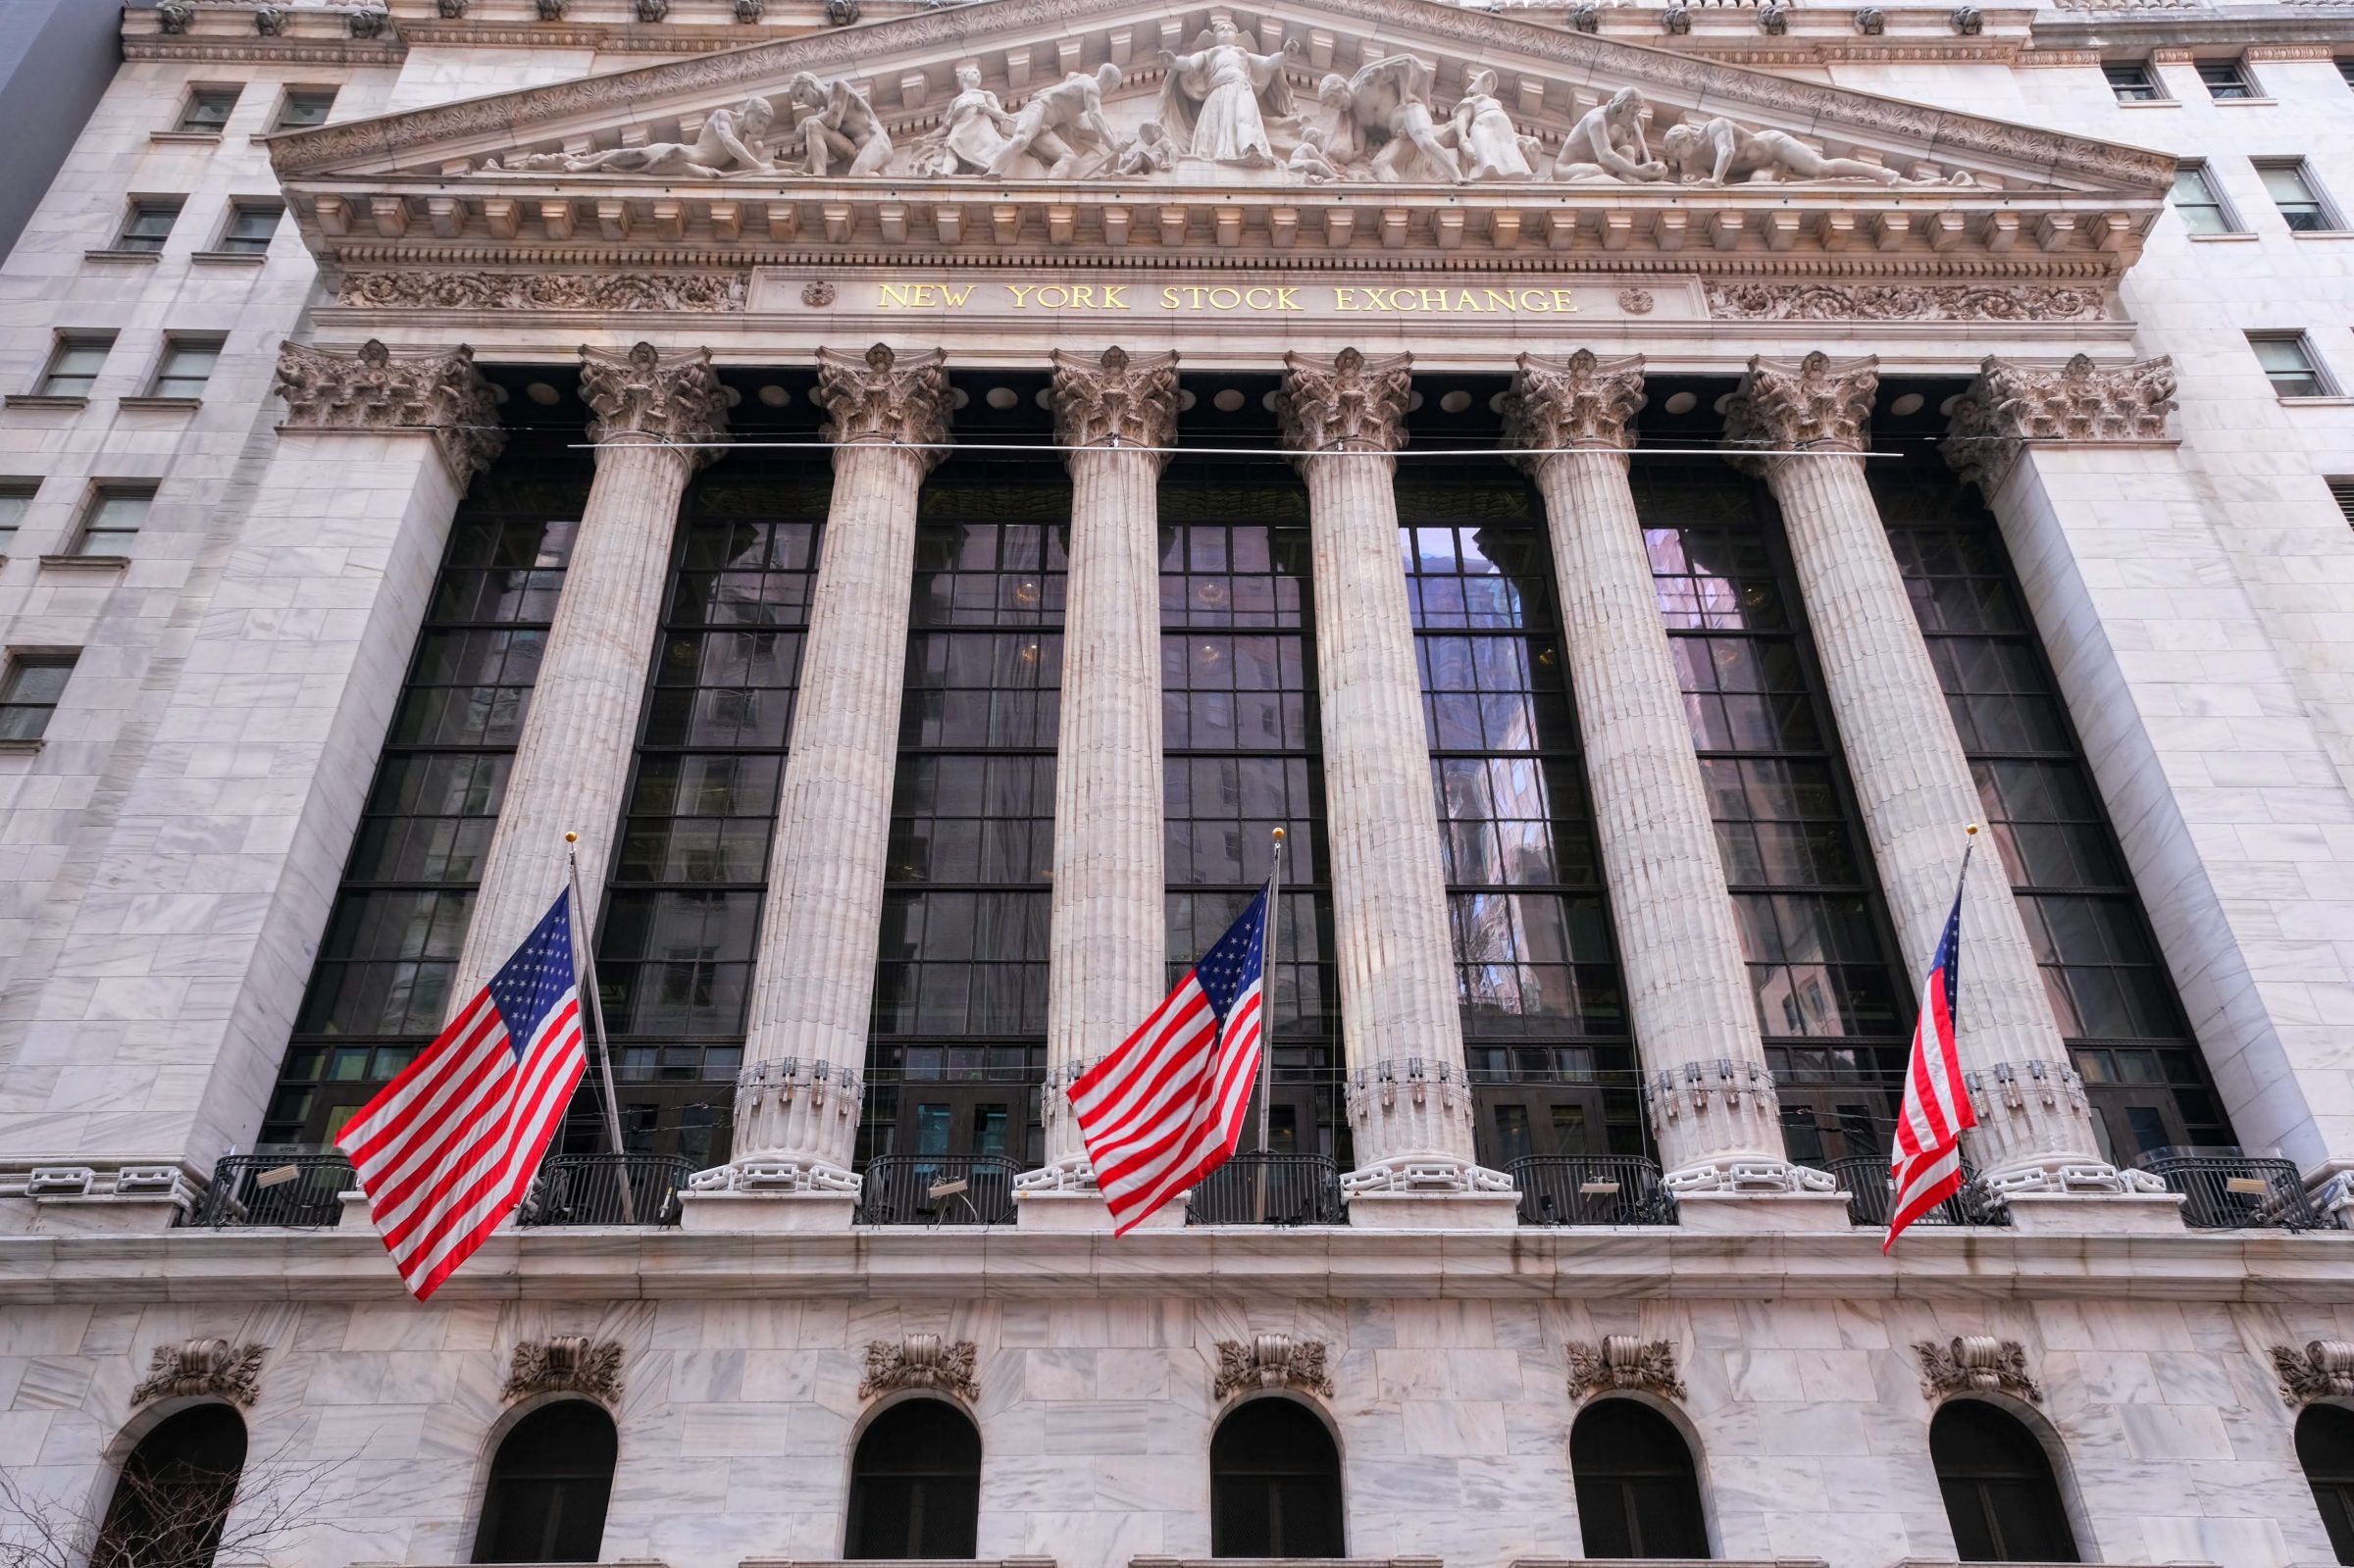 Het wereldberoemde New York Stock Exchange - Wall Street gebouw. Inclusief Amerikaanse vlaggen natuurlijk